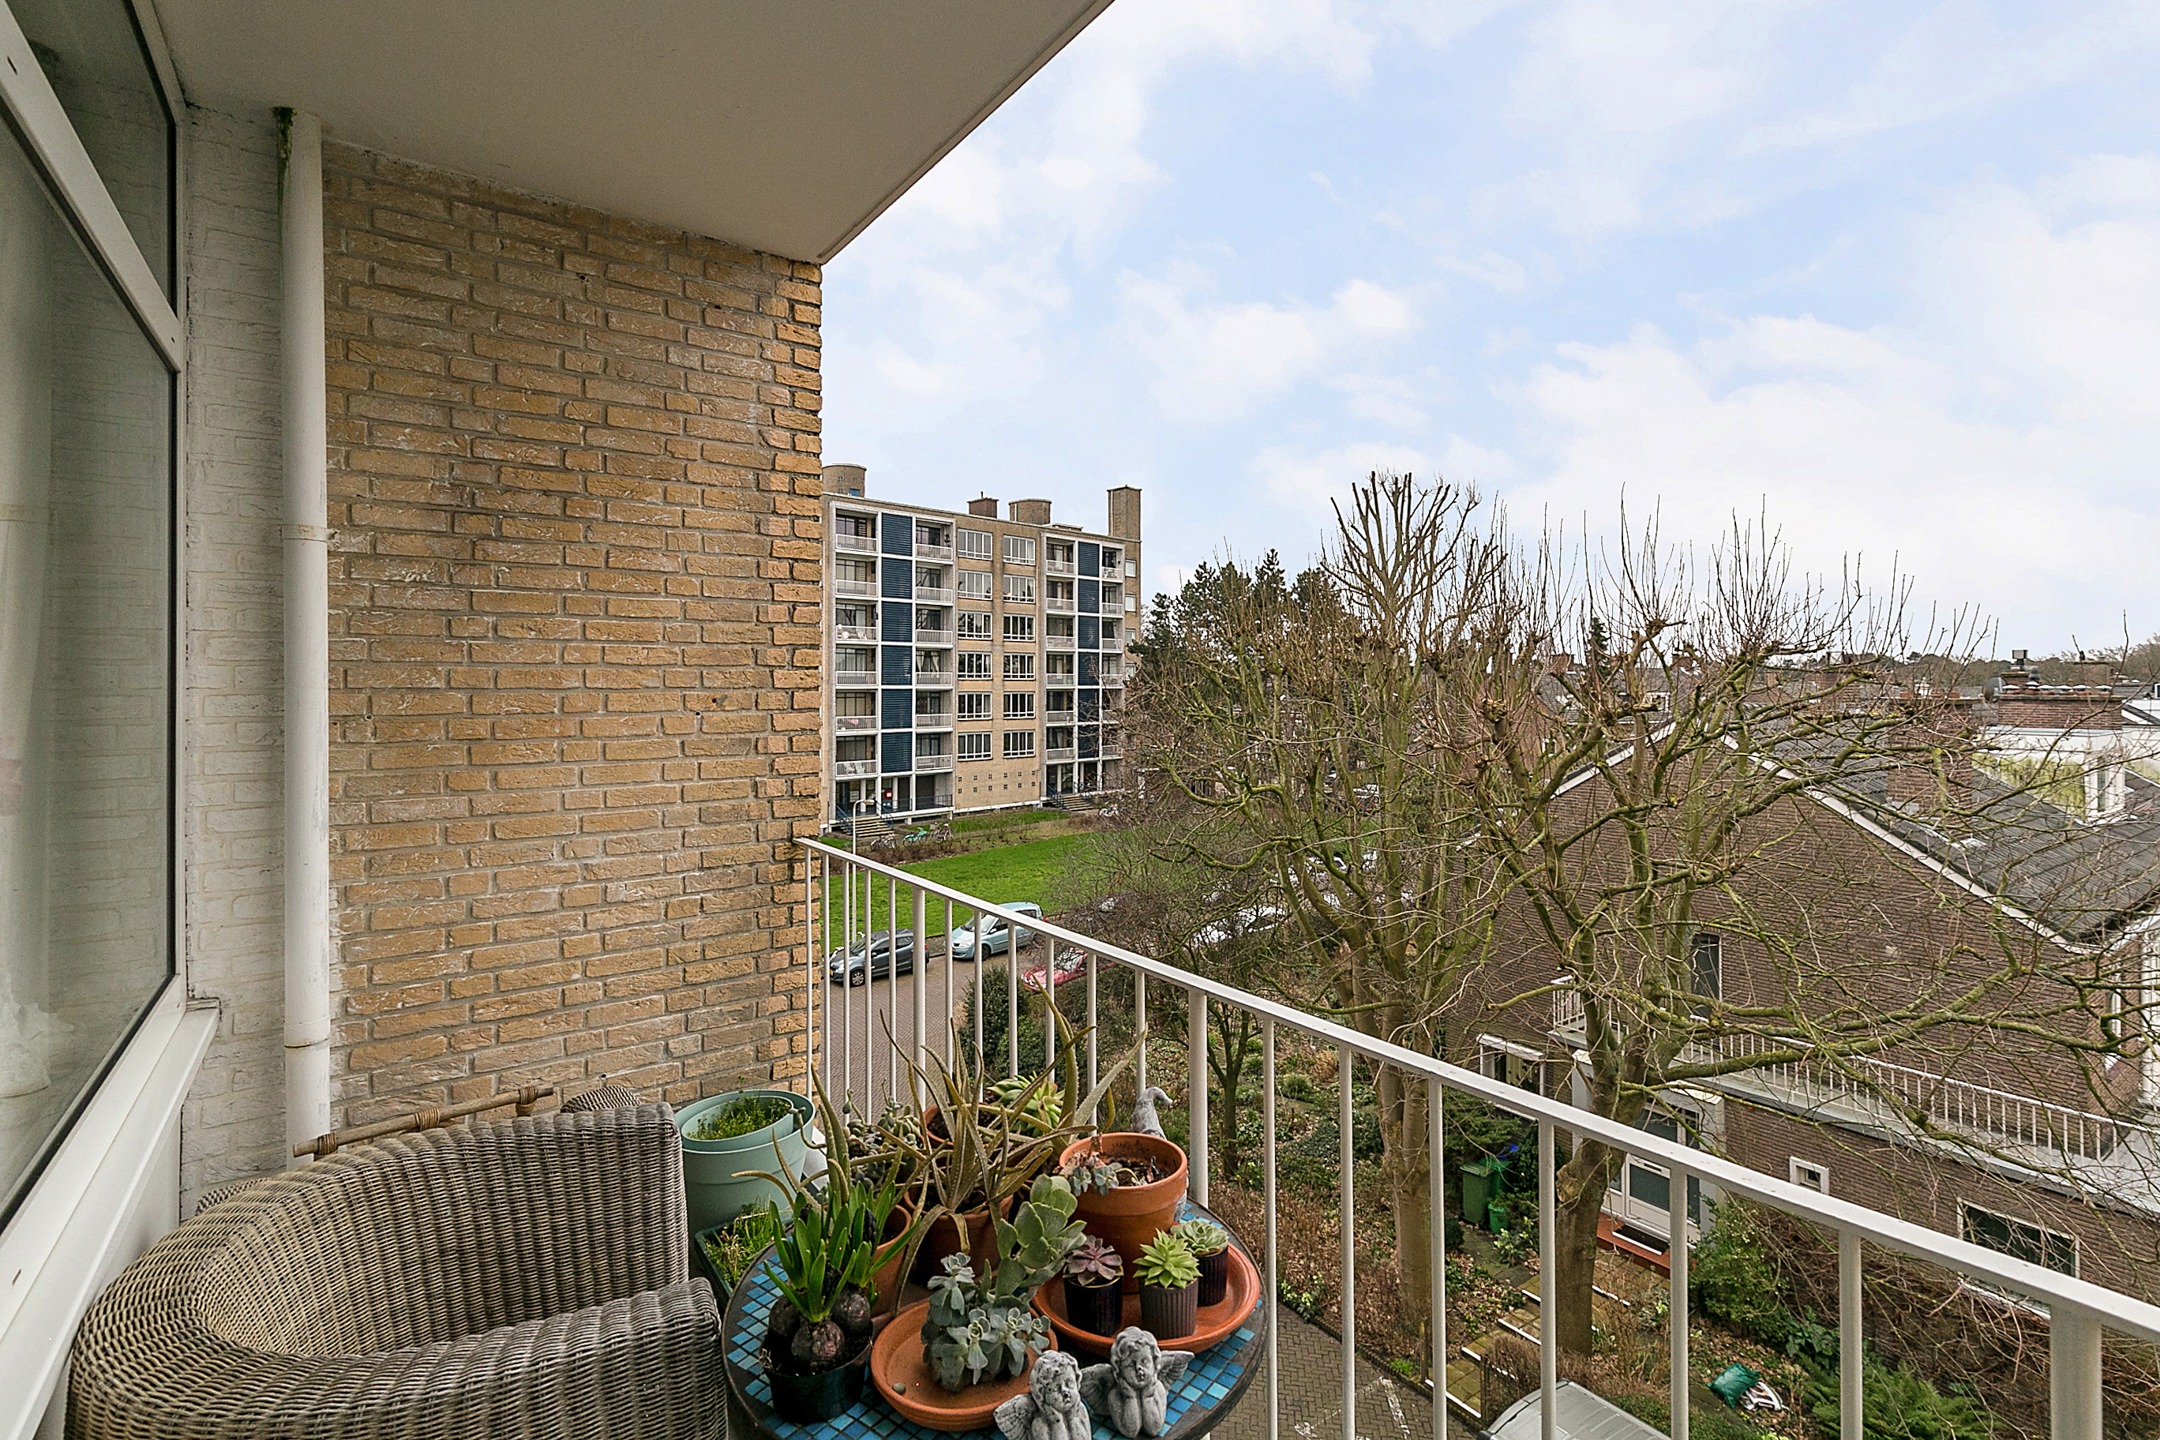 Woning / appartement - Den Haag - Van Alkemadelaan 1180 1190